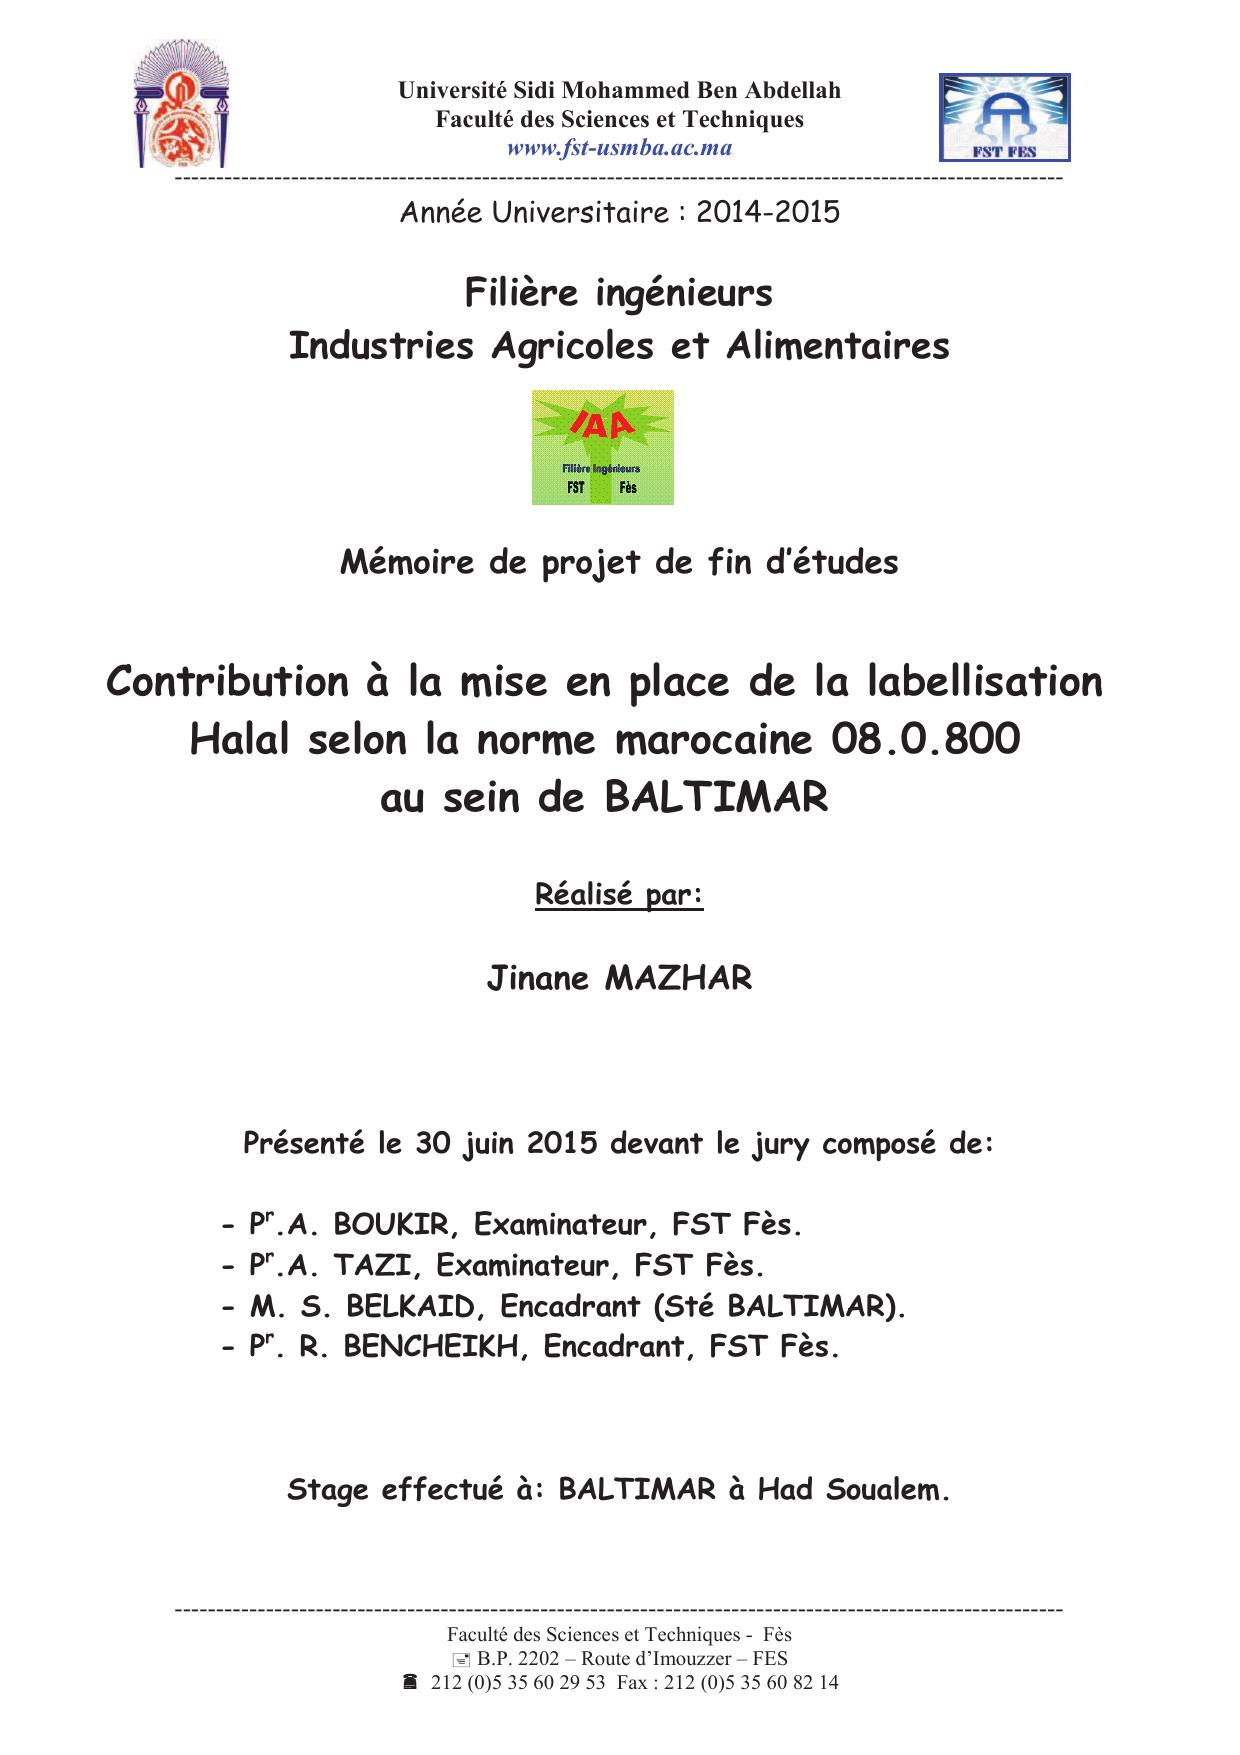 Contribution à la mise en place de la labellisation Halal selon la norme marocaine 08.0.800 au sein de BALTIMAR